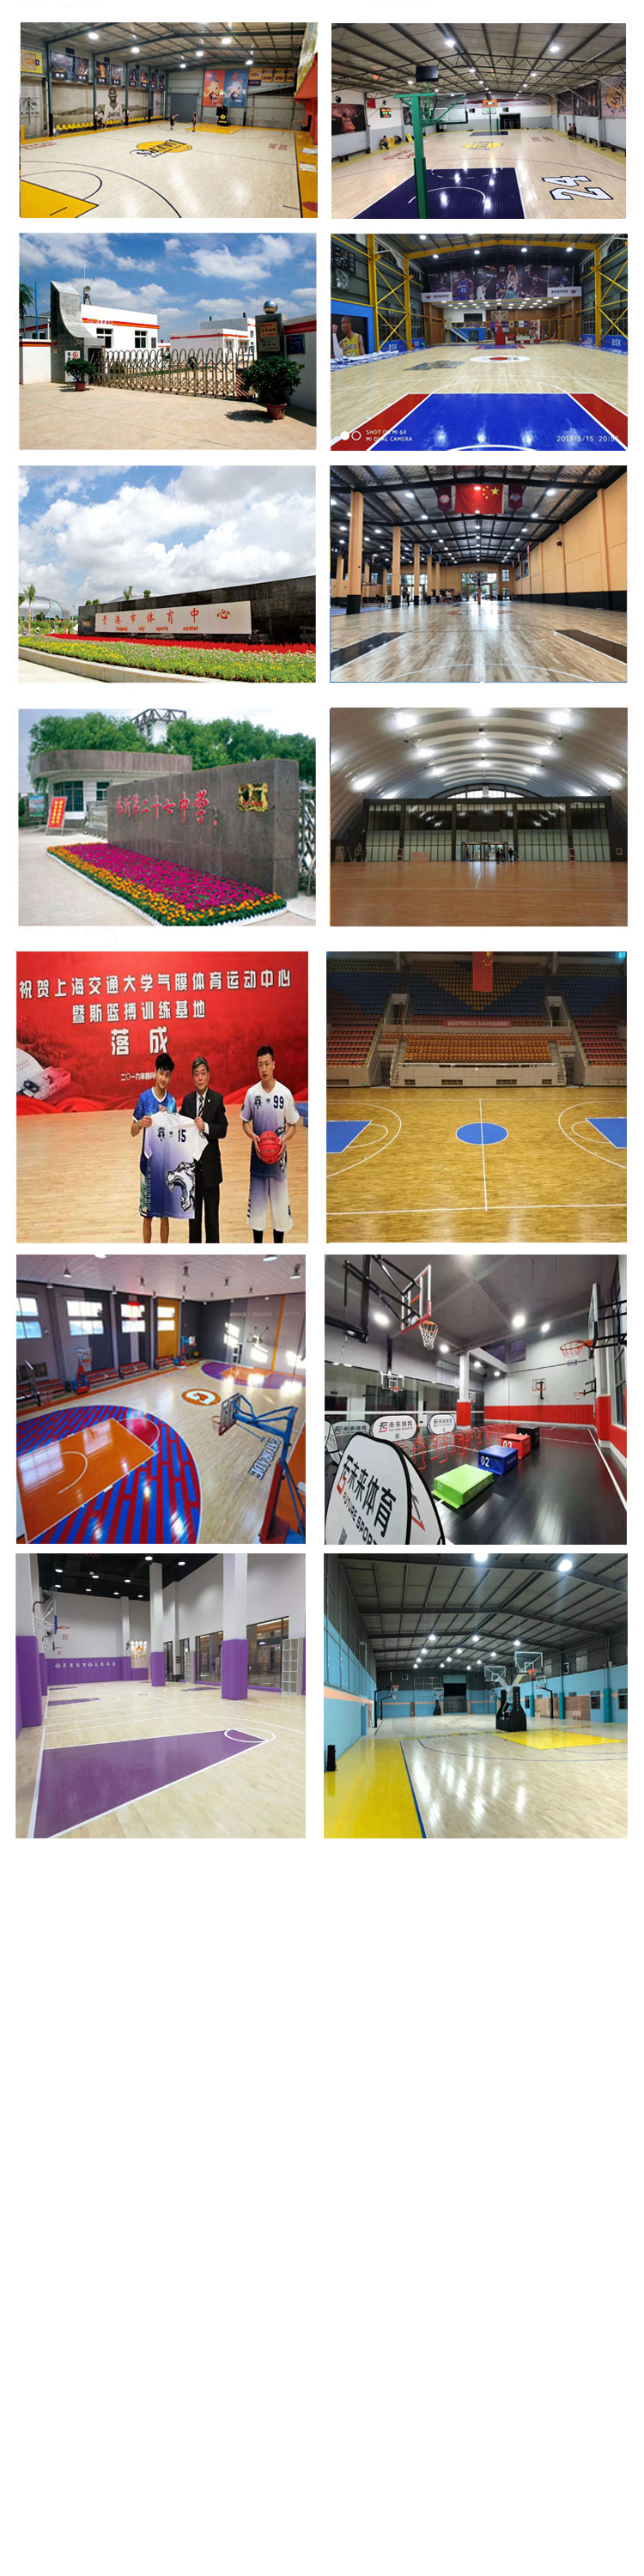 郑州 舞台硬木地板 枫桦木运动木地板 篮球馆地板厂家